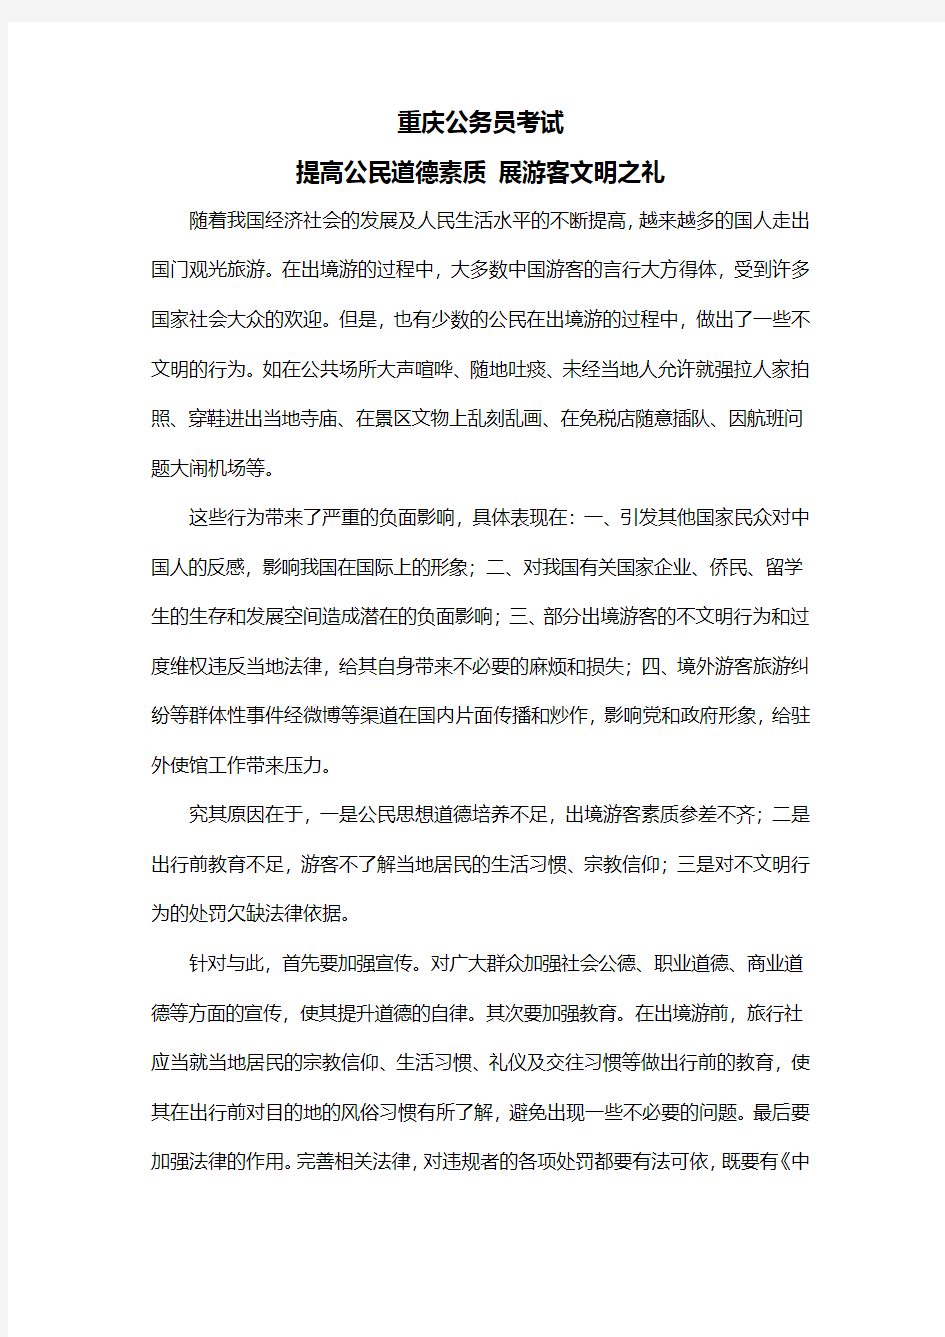 重庆公务员考试提高公民道德素质 展游客文明之礼 -热点